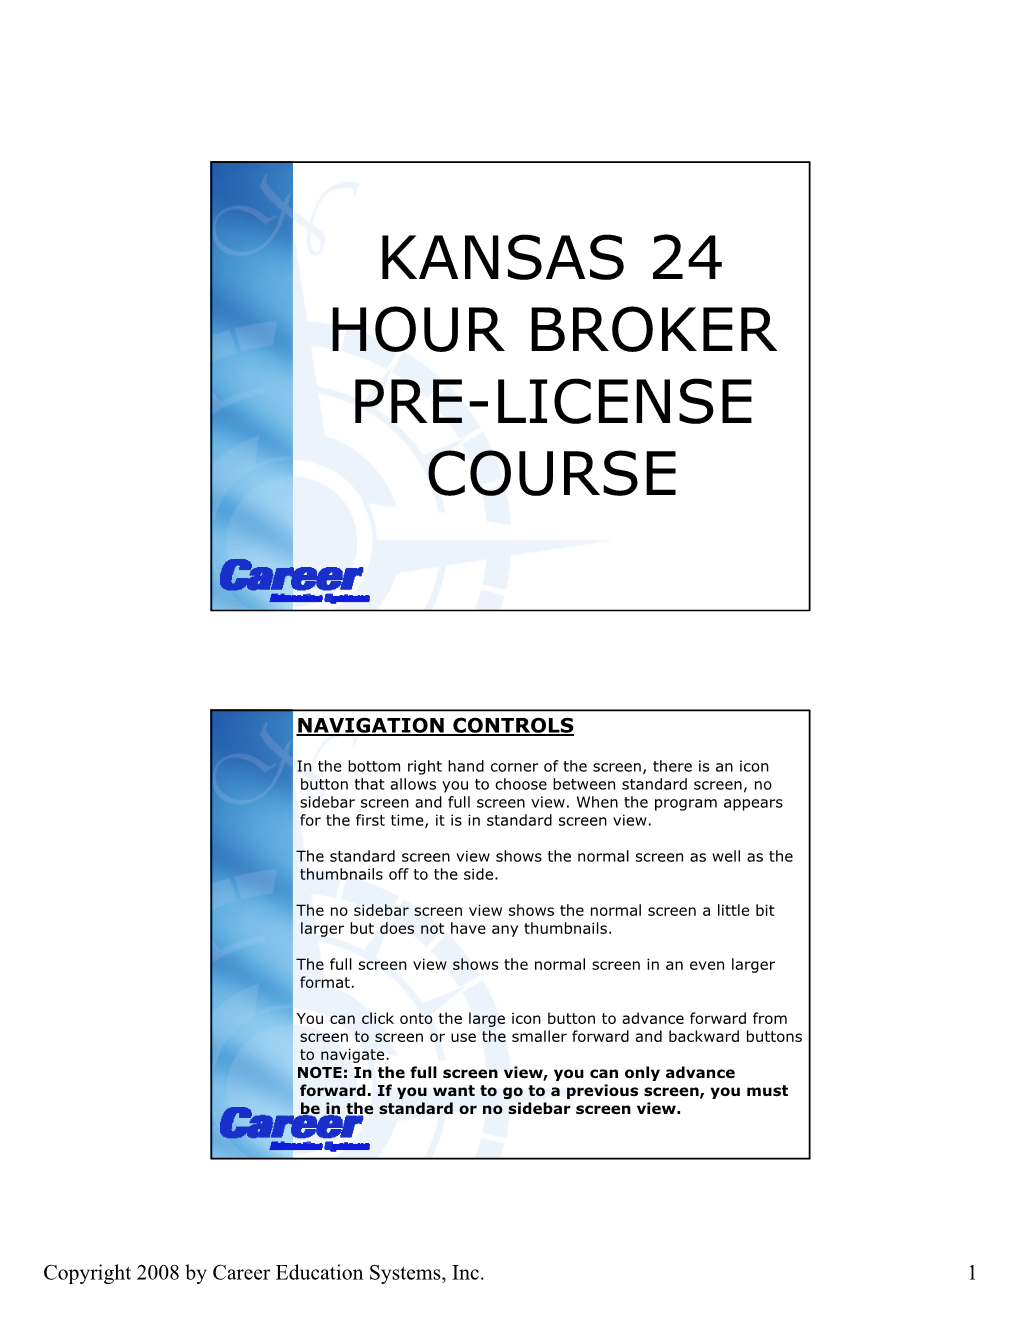 Kansas 24 Hour Broker Pre-License Course